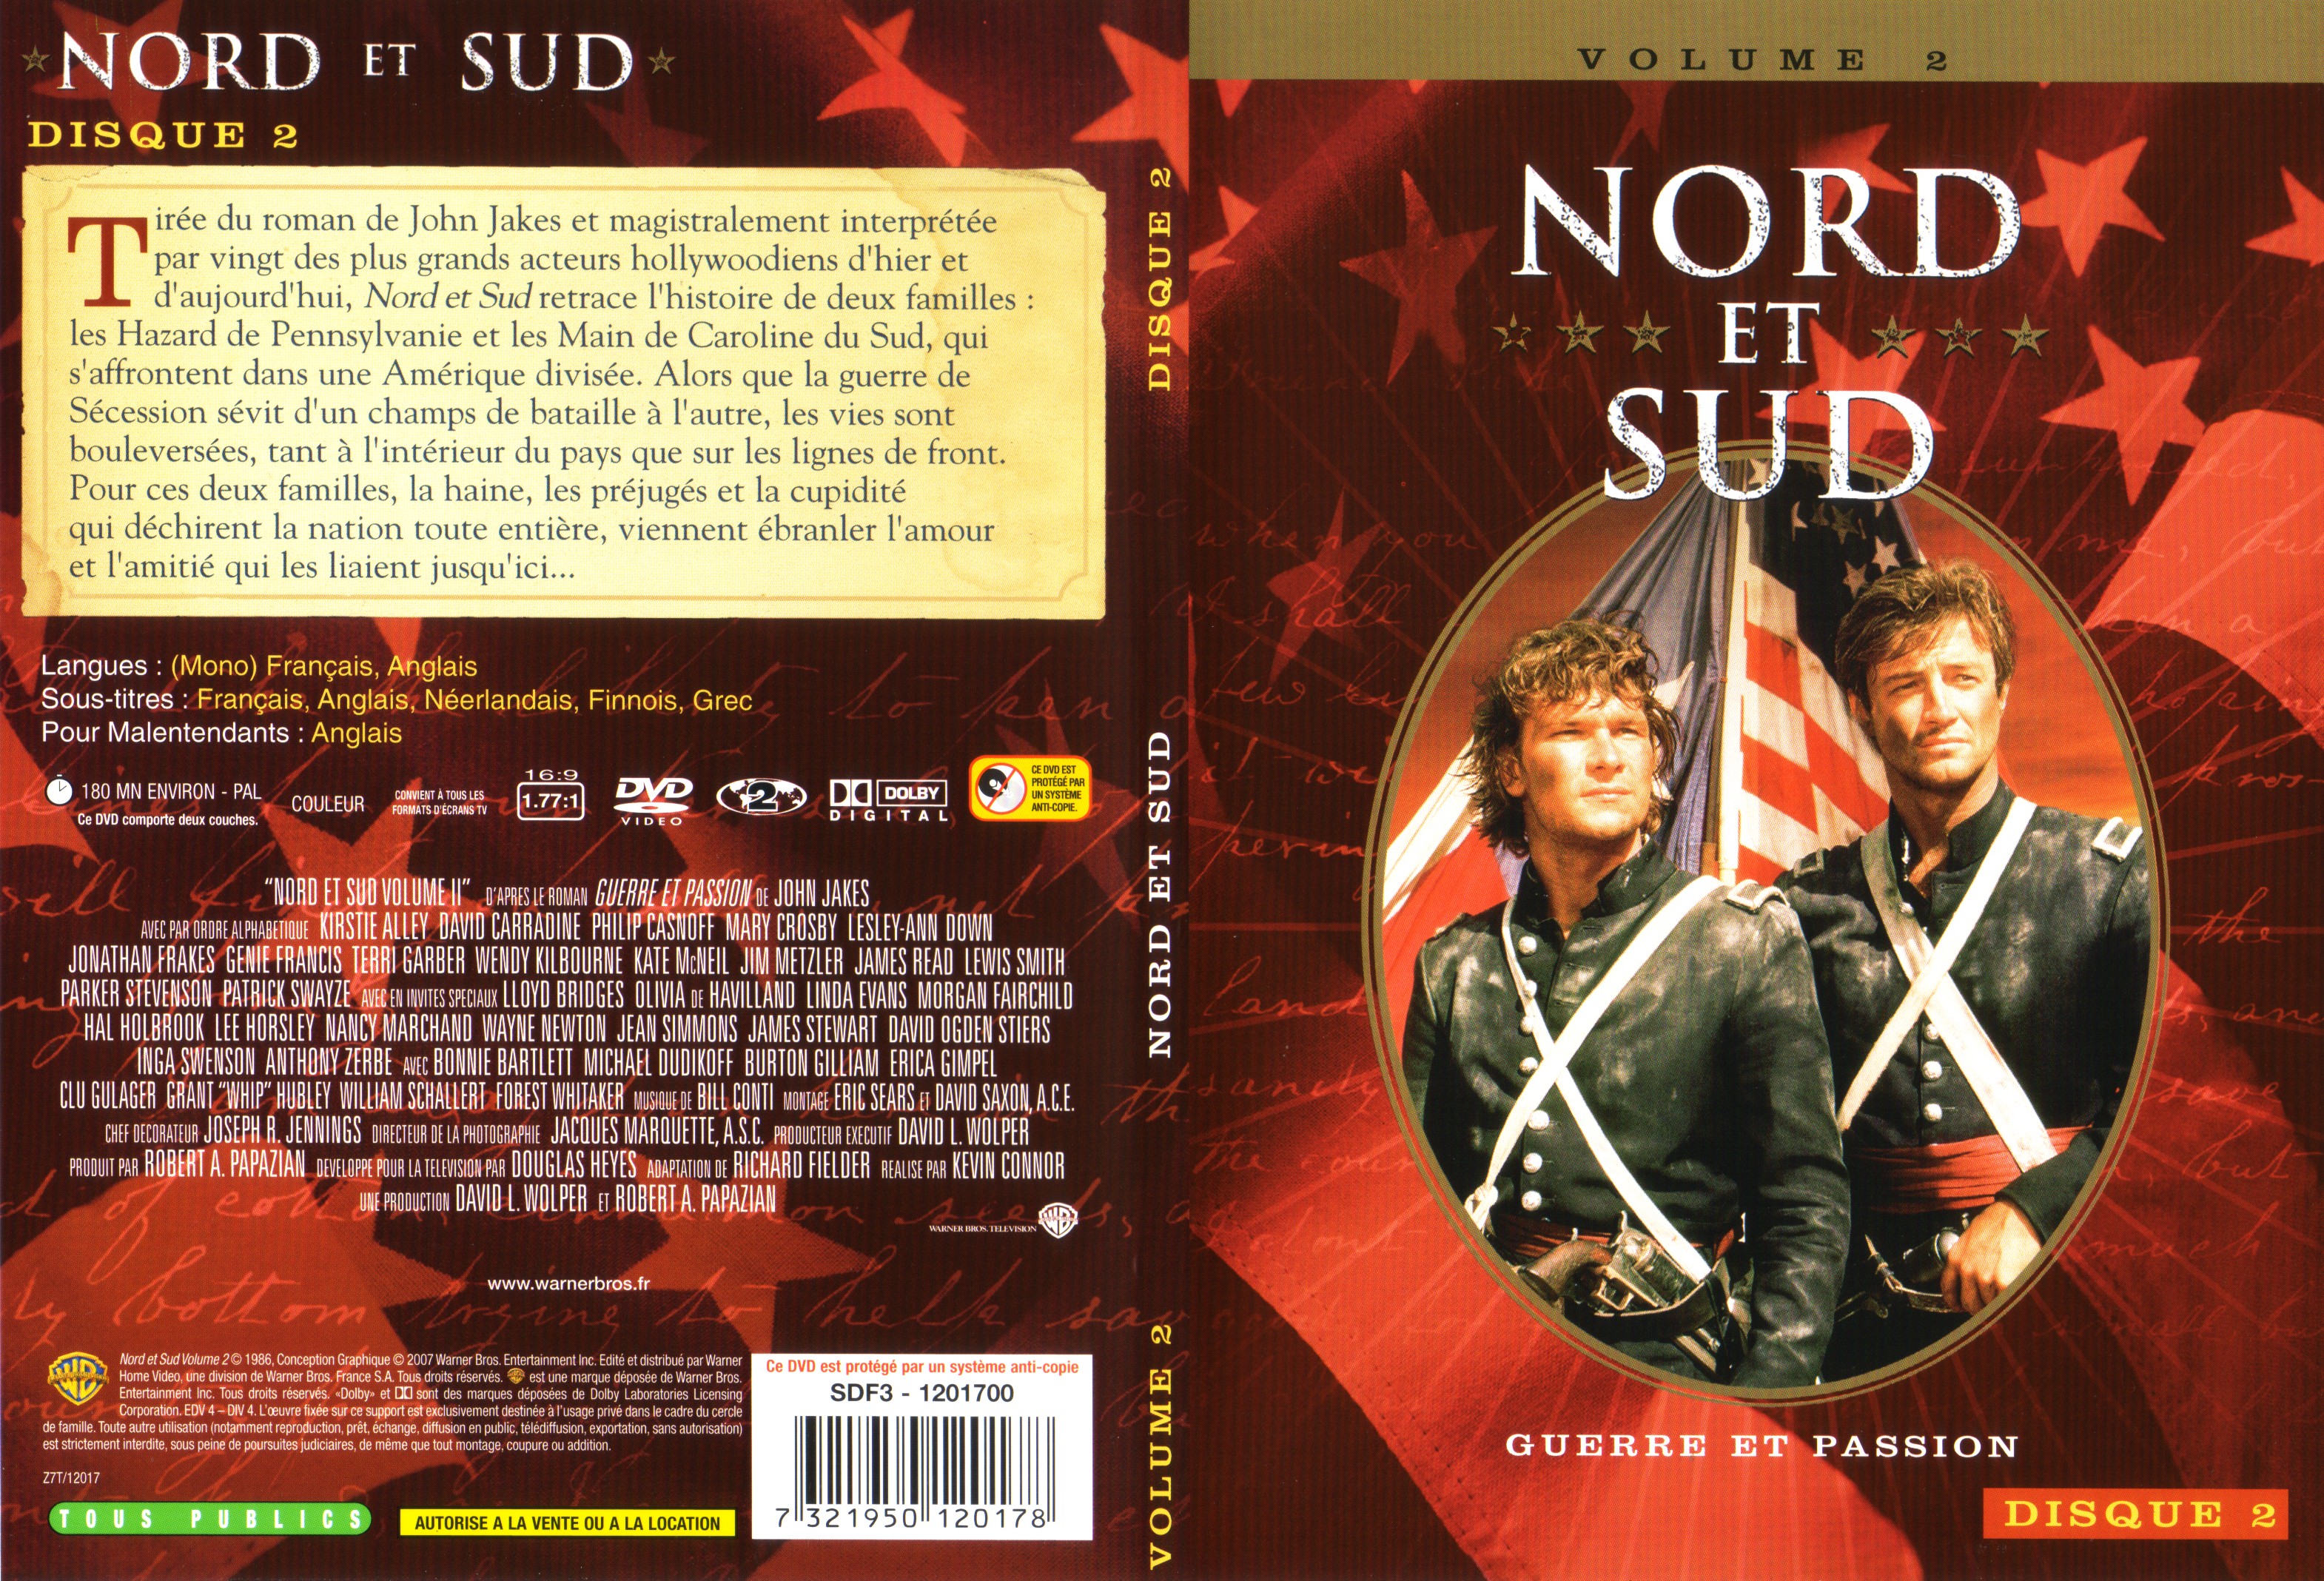 Jaquette DVD Nord et sud vol 2 dvd 2 v2